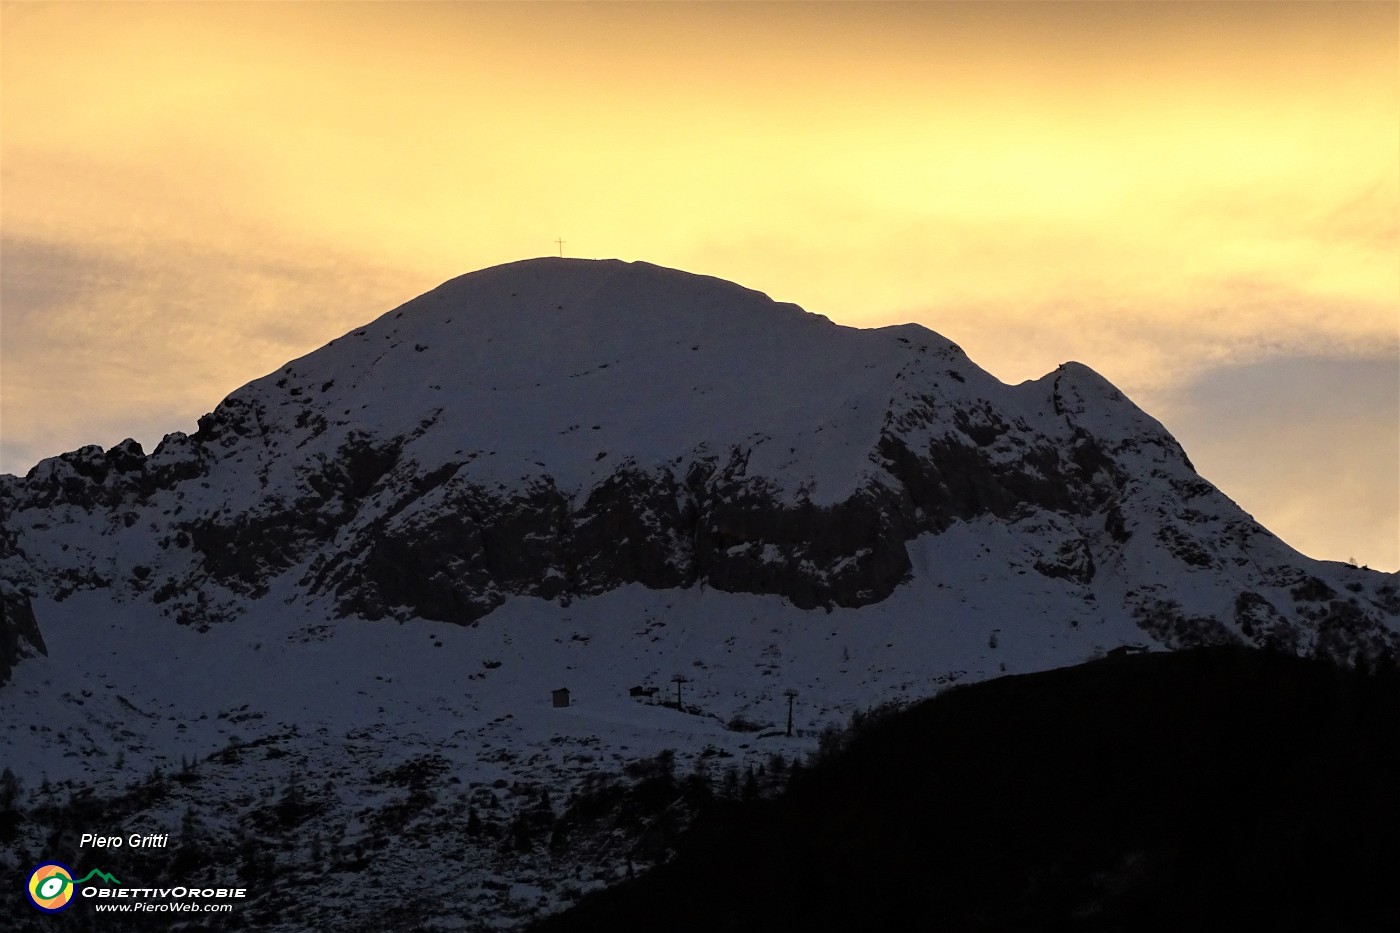 92 Il sole tramonta dietro il Monte Cavallo.JPG